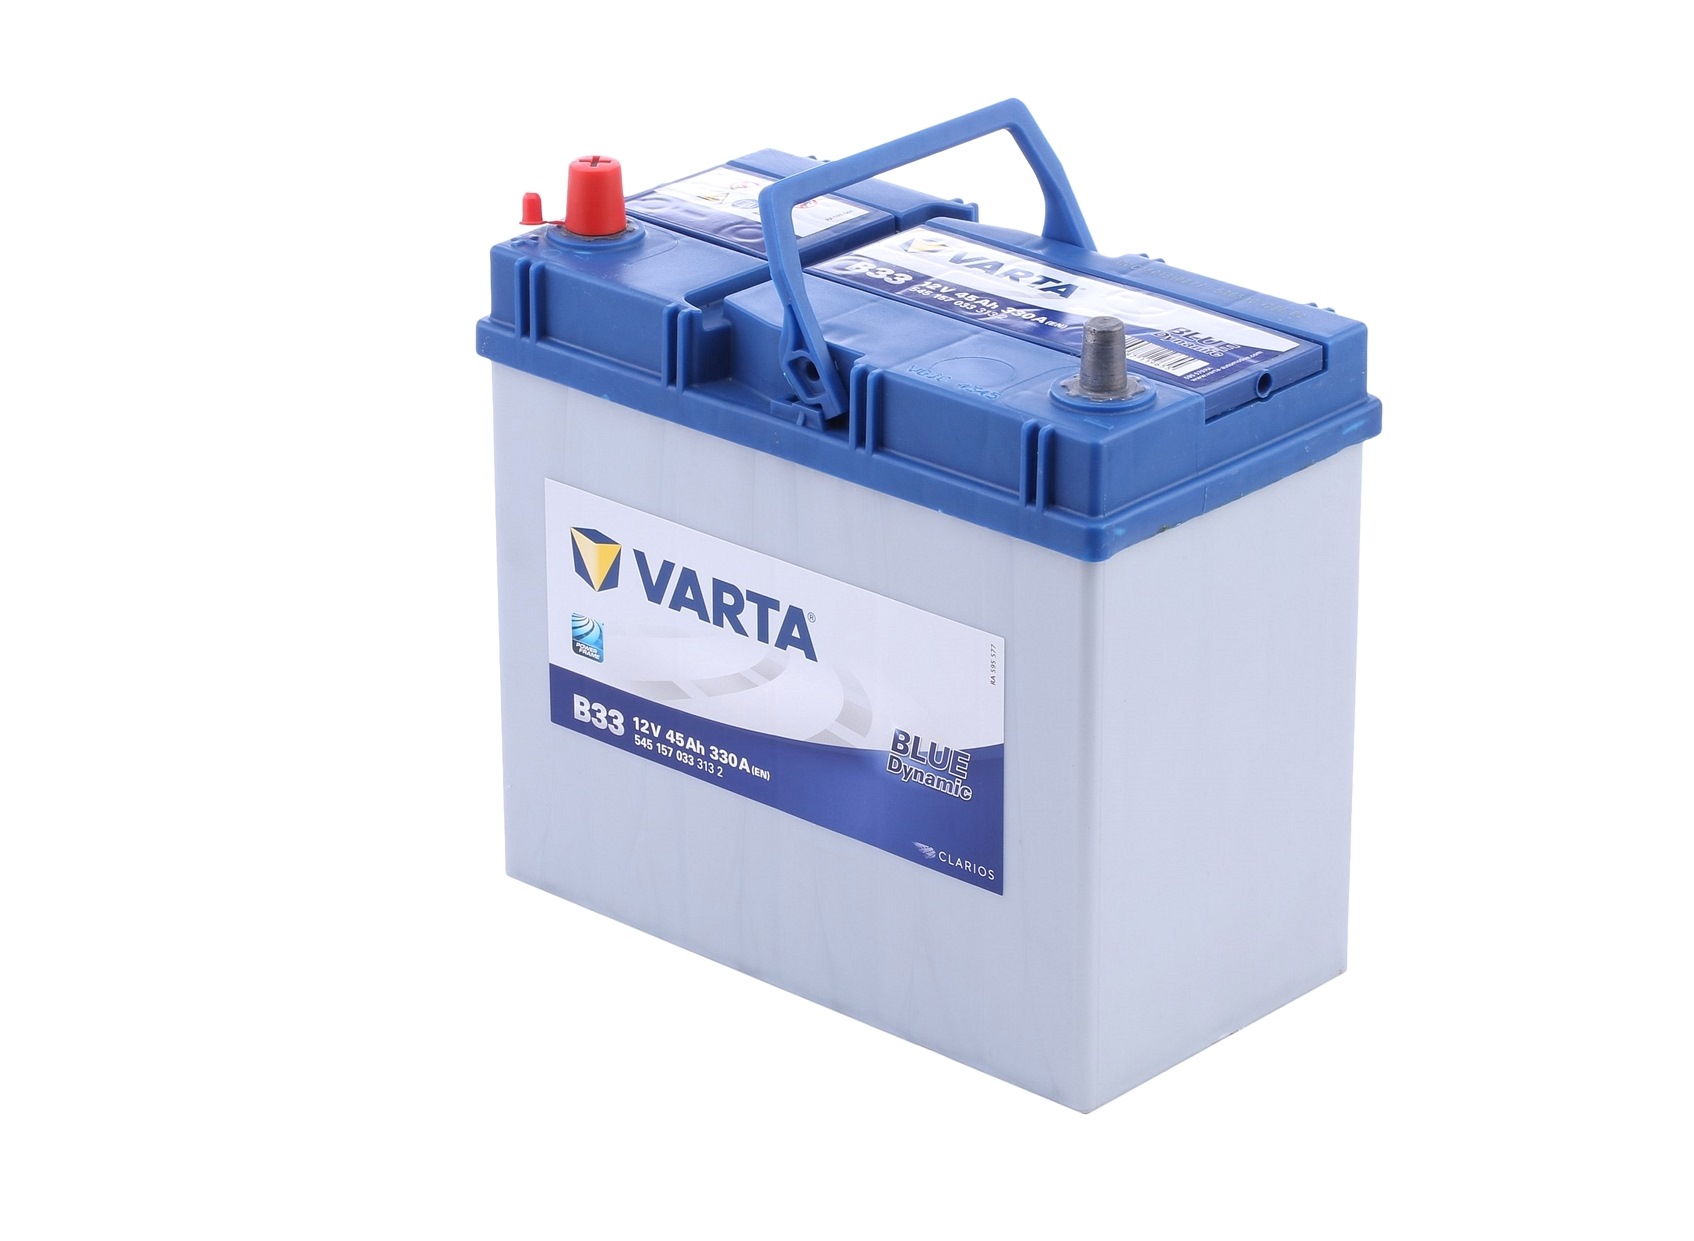 VARTA 5451570333132 Starterbatterie DAIHATSU experience and price